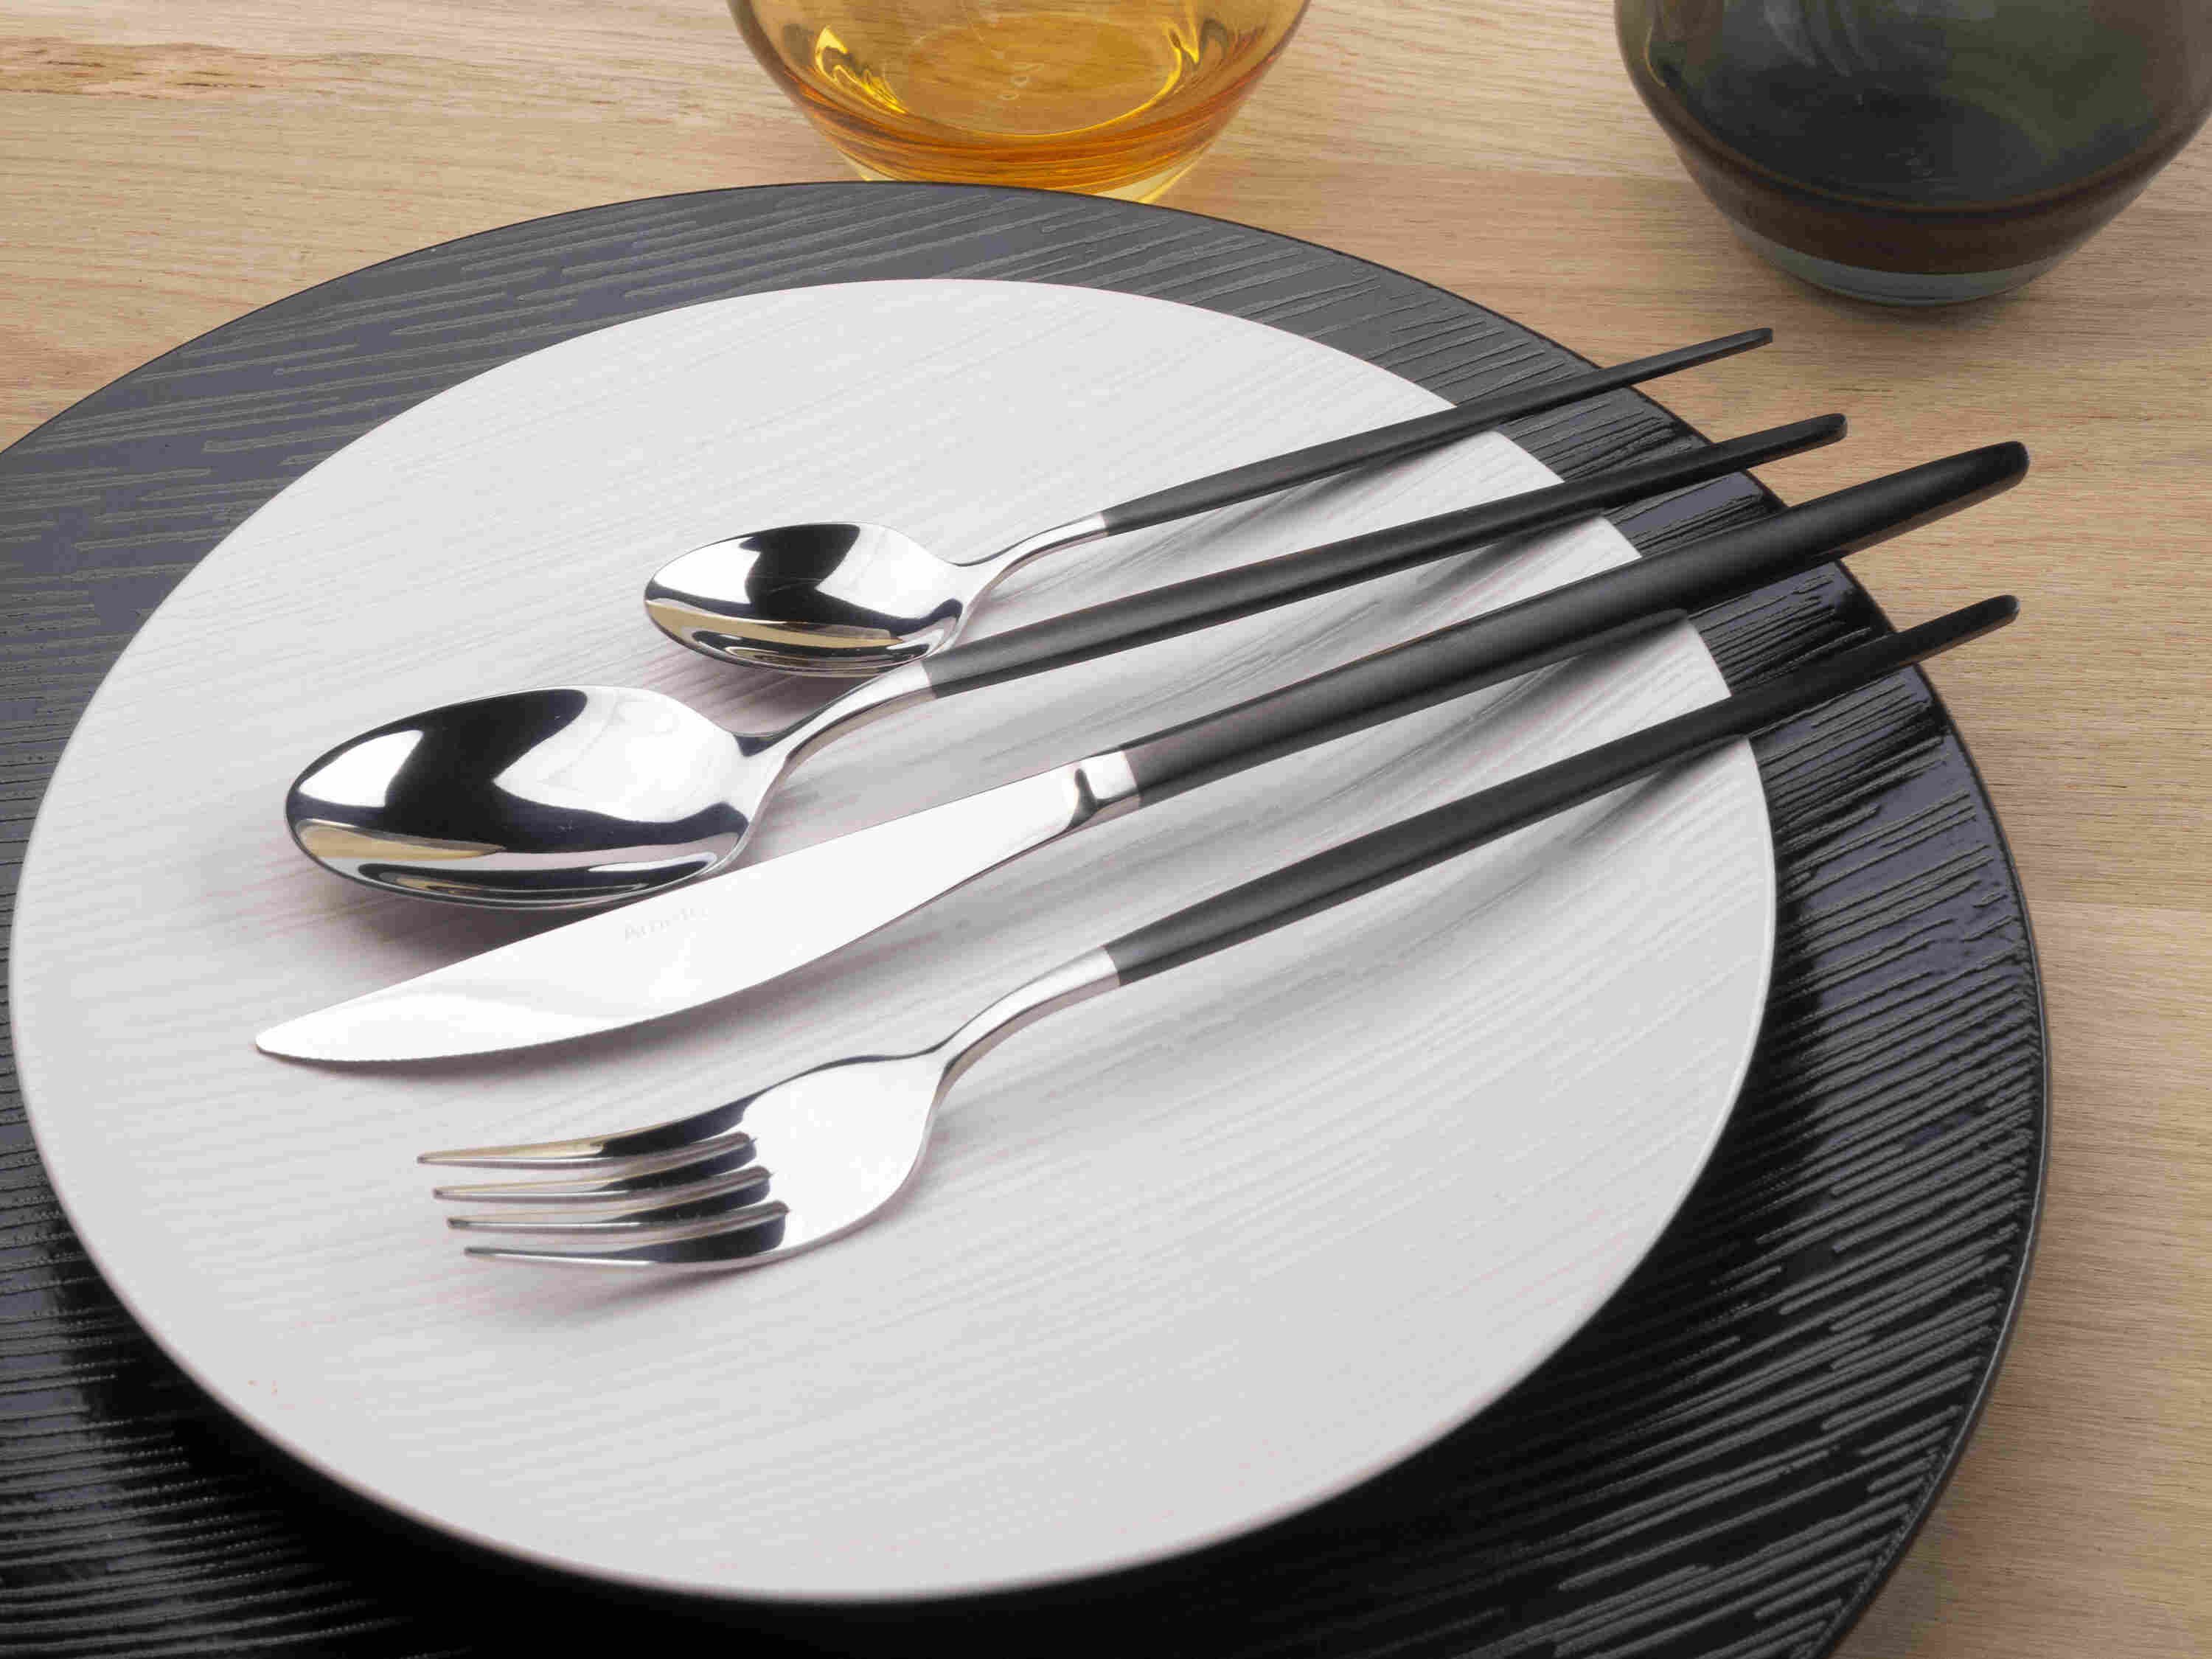 Plan rapproché sur une assiette en porcelaine blanche légèrement striée et ses couverts assortis : une fourchette, un couteau et deux cuillères.